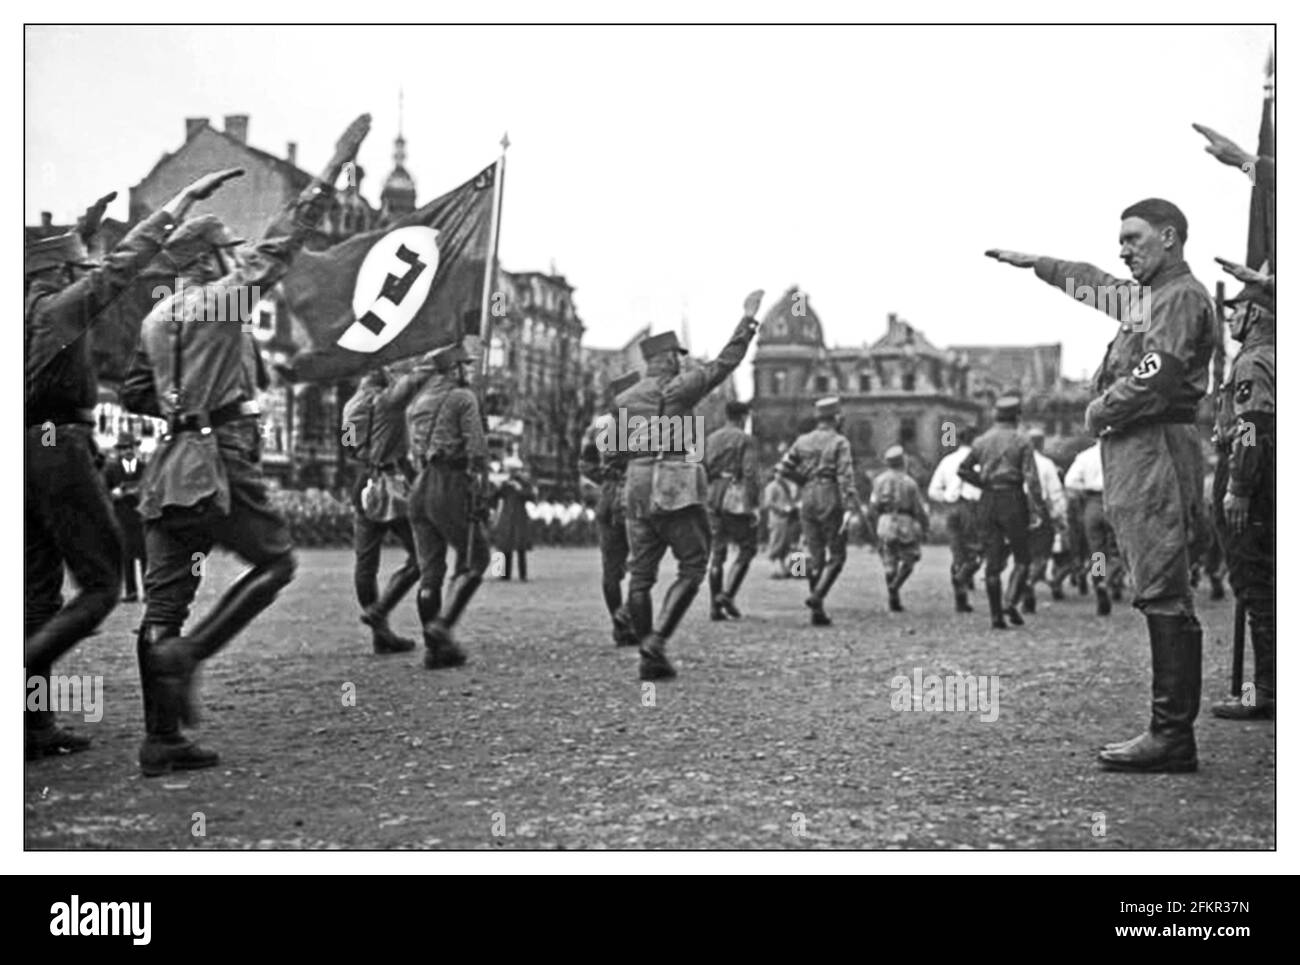 Adolf Hitler 1930er Jahre grüßt die S.A. die "private Armee" von Adolf Hitler, Sturmabteilung, besser bekannt als die SA. Die SA wurden 1921 gegründet und waren aufgrund ihrer braunen Uniform als ‘Brownshirts’ bekannt. Adolf Hitler der oberste Führer der verbotenen S.A. bei der Inspektion einer marschvergangenheit mit Nazi-Hakenkreuzflaggen in Braunschweig. Deutschland Adolf Hitler Reichskanzler, Braunschweig Deutschland Datum April 1932 Stockfoto